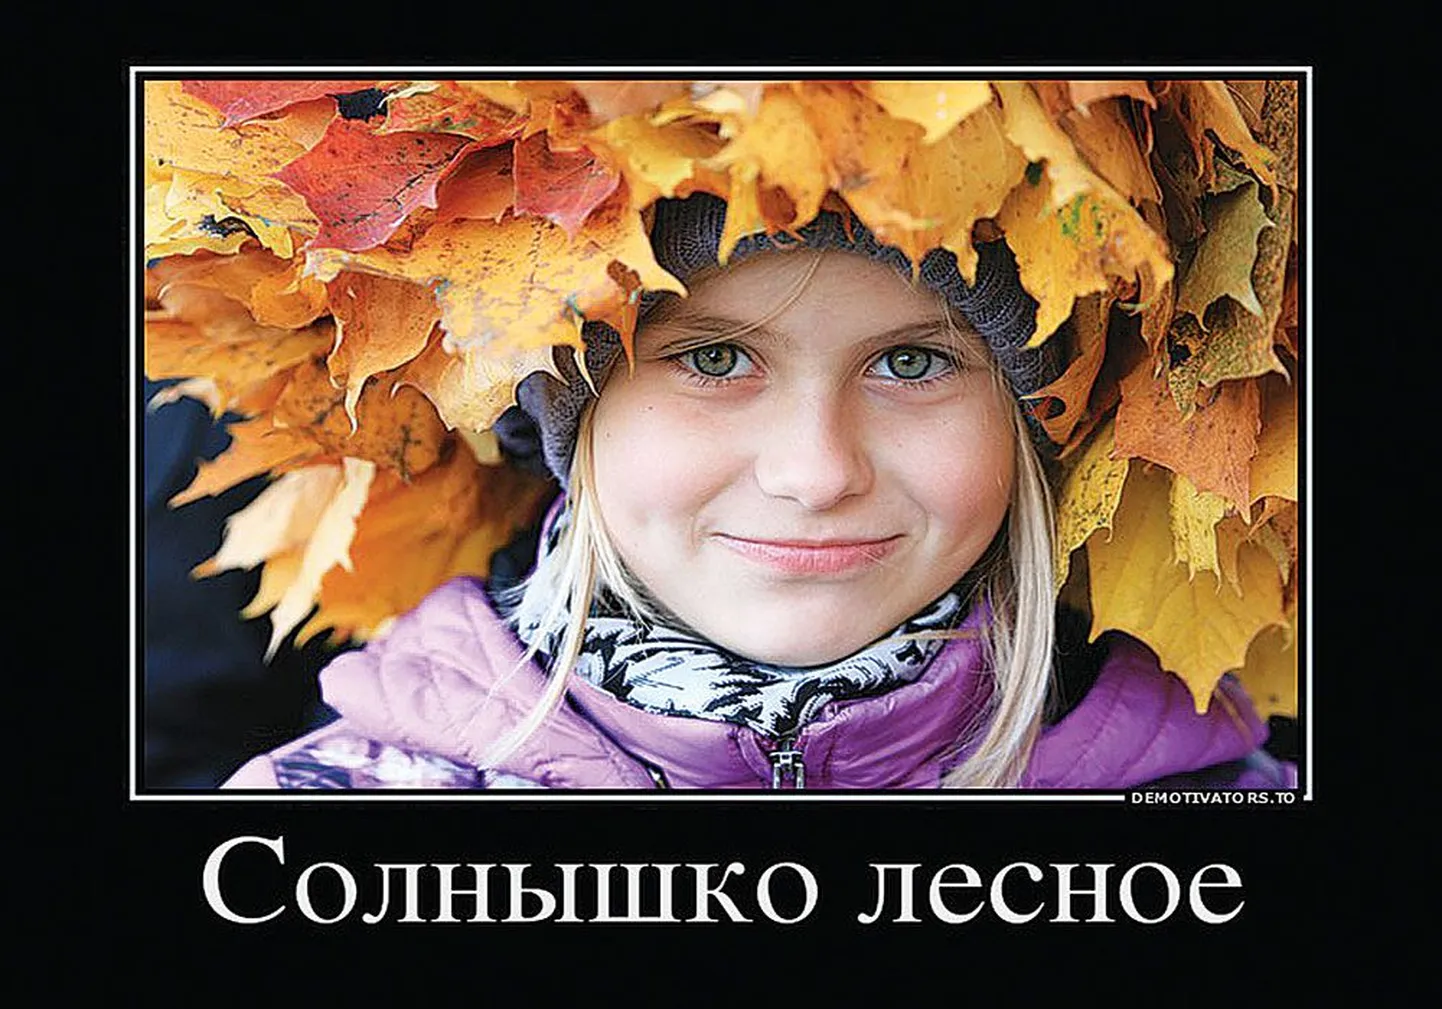 «Солнышко лесное» – так назвал Геннадий Щелкановцев фотографию замечательно улыбчивой девчушки. И правда, очаровательная солнечная девочка!